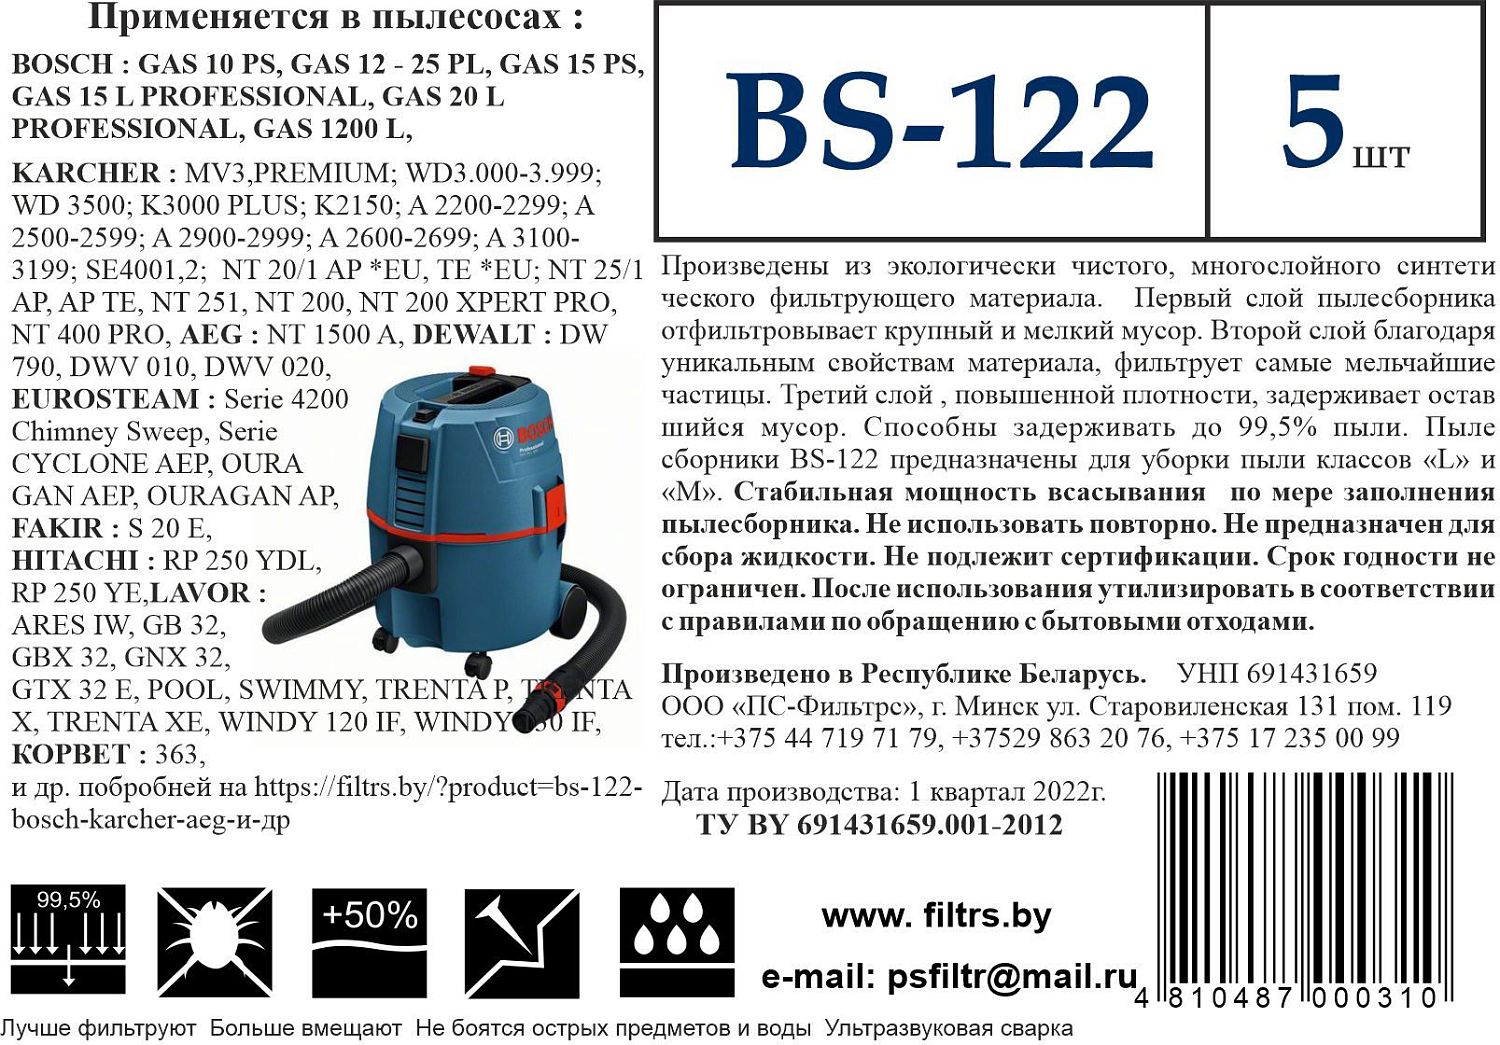 Пылесборник для промышленных пылесосов Bosch BS-122